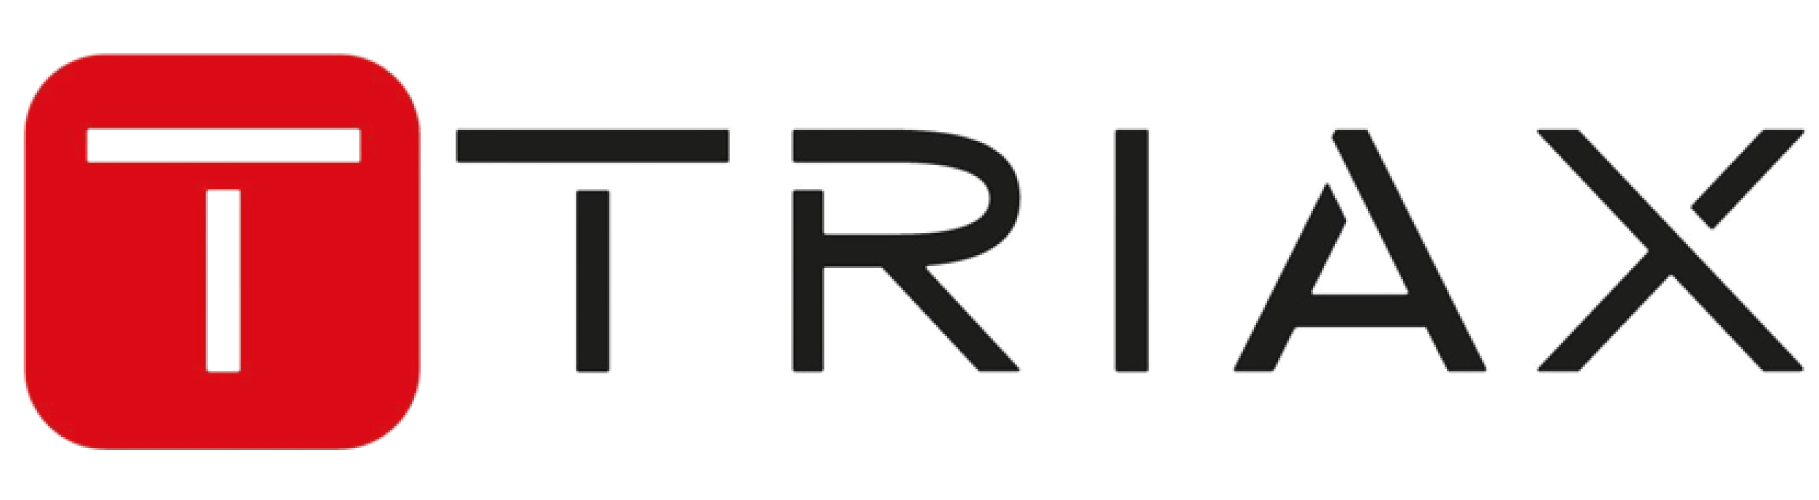 logo triax